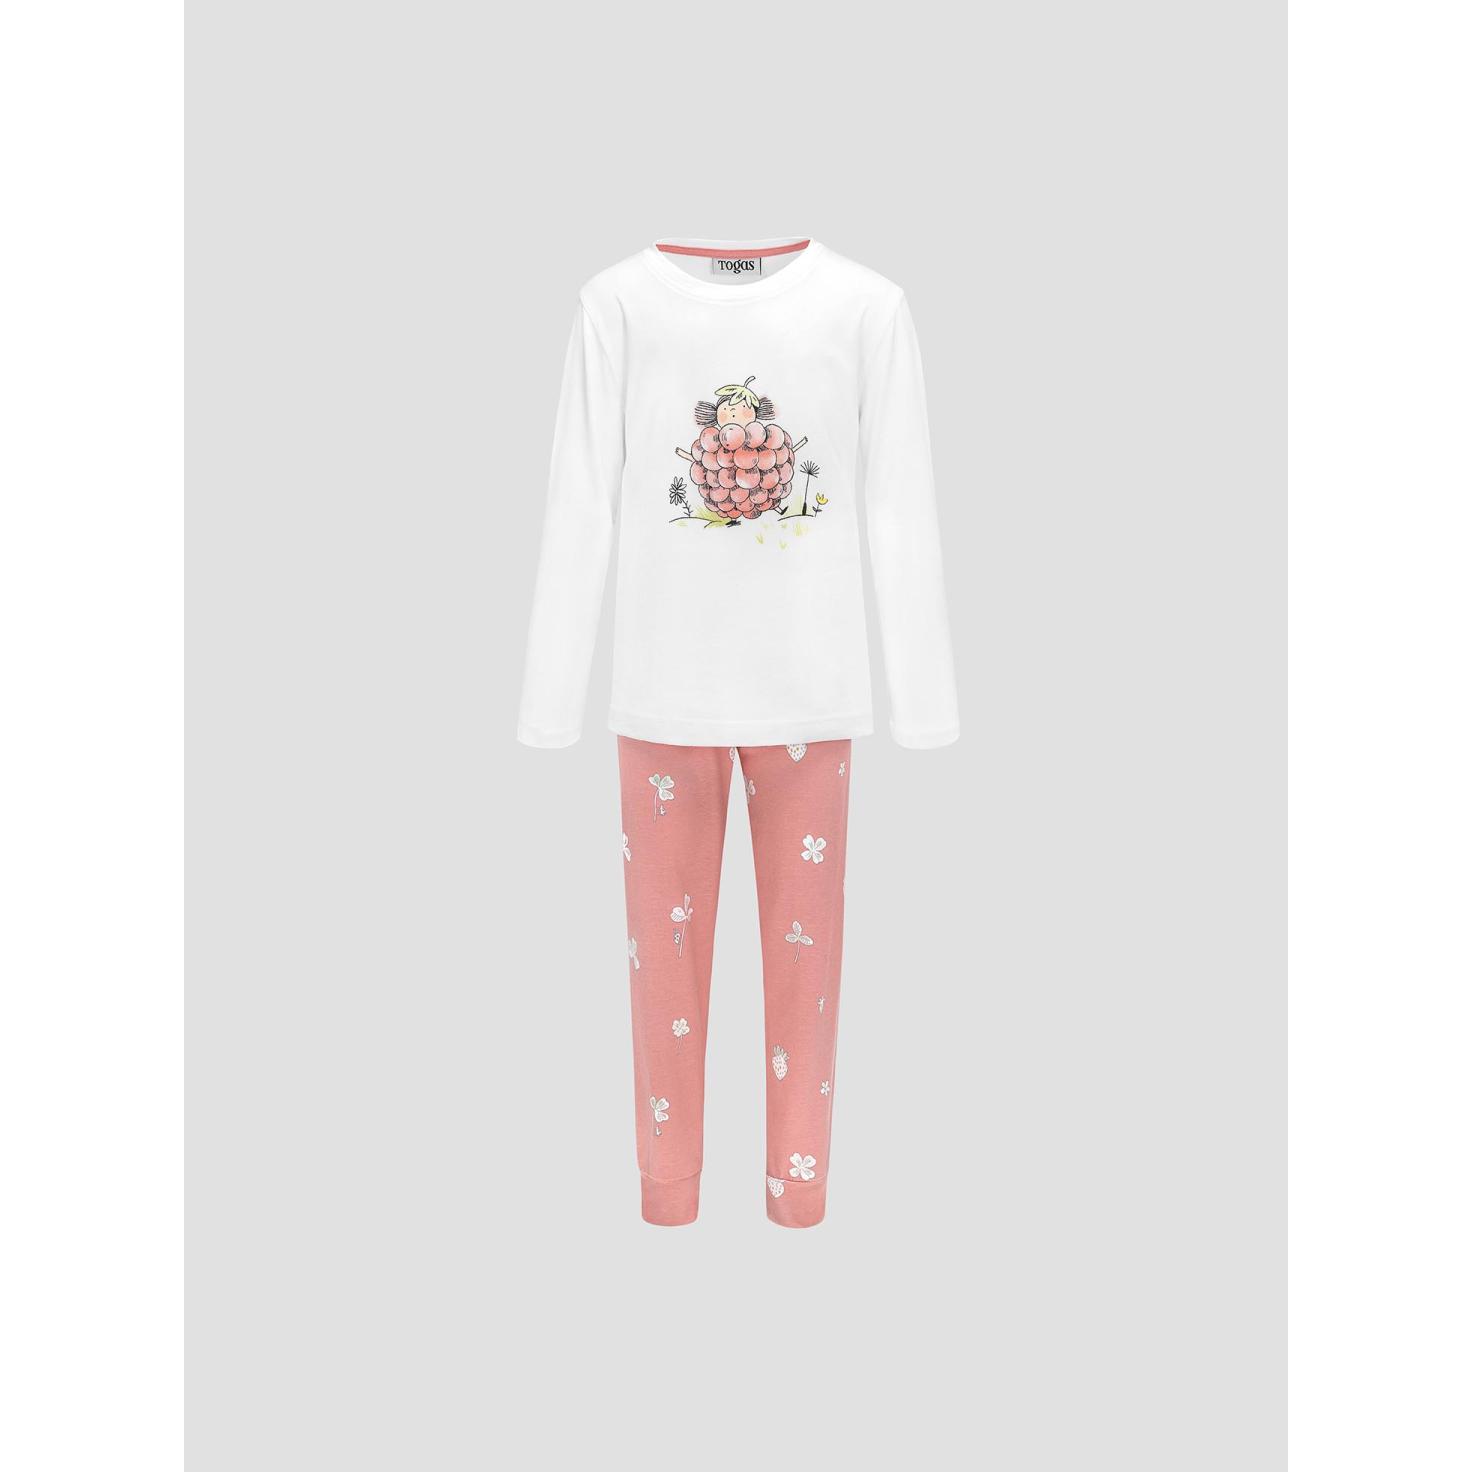 Пижама для девочек Kids by togas Стробби бело-розовый 104-110 см жен пижама с шортами инь янь белый р 48